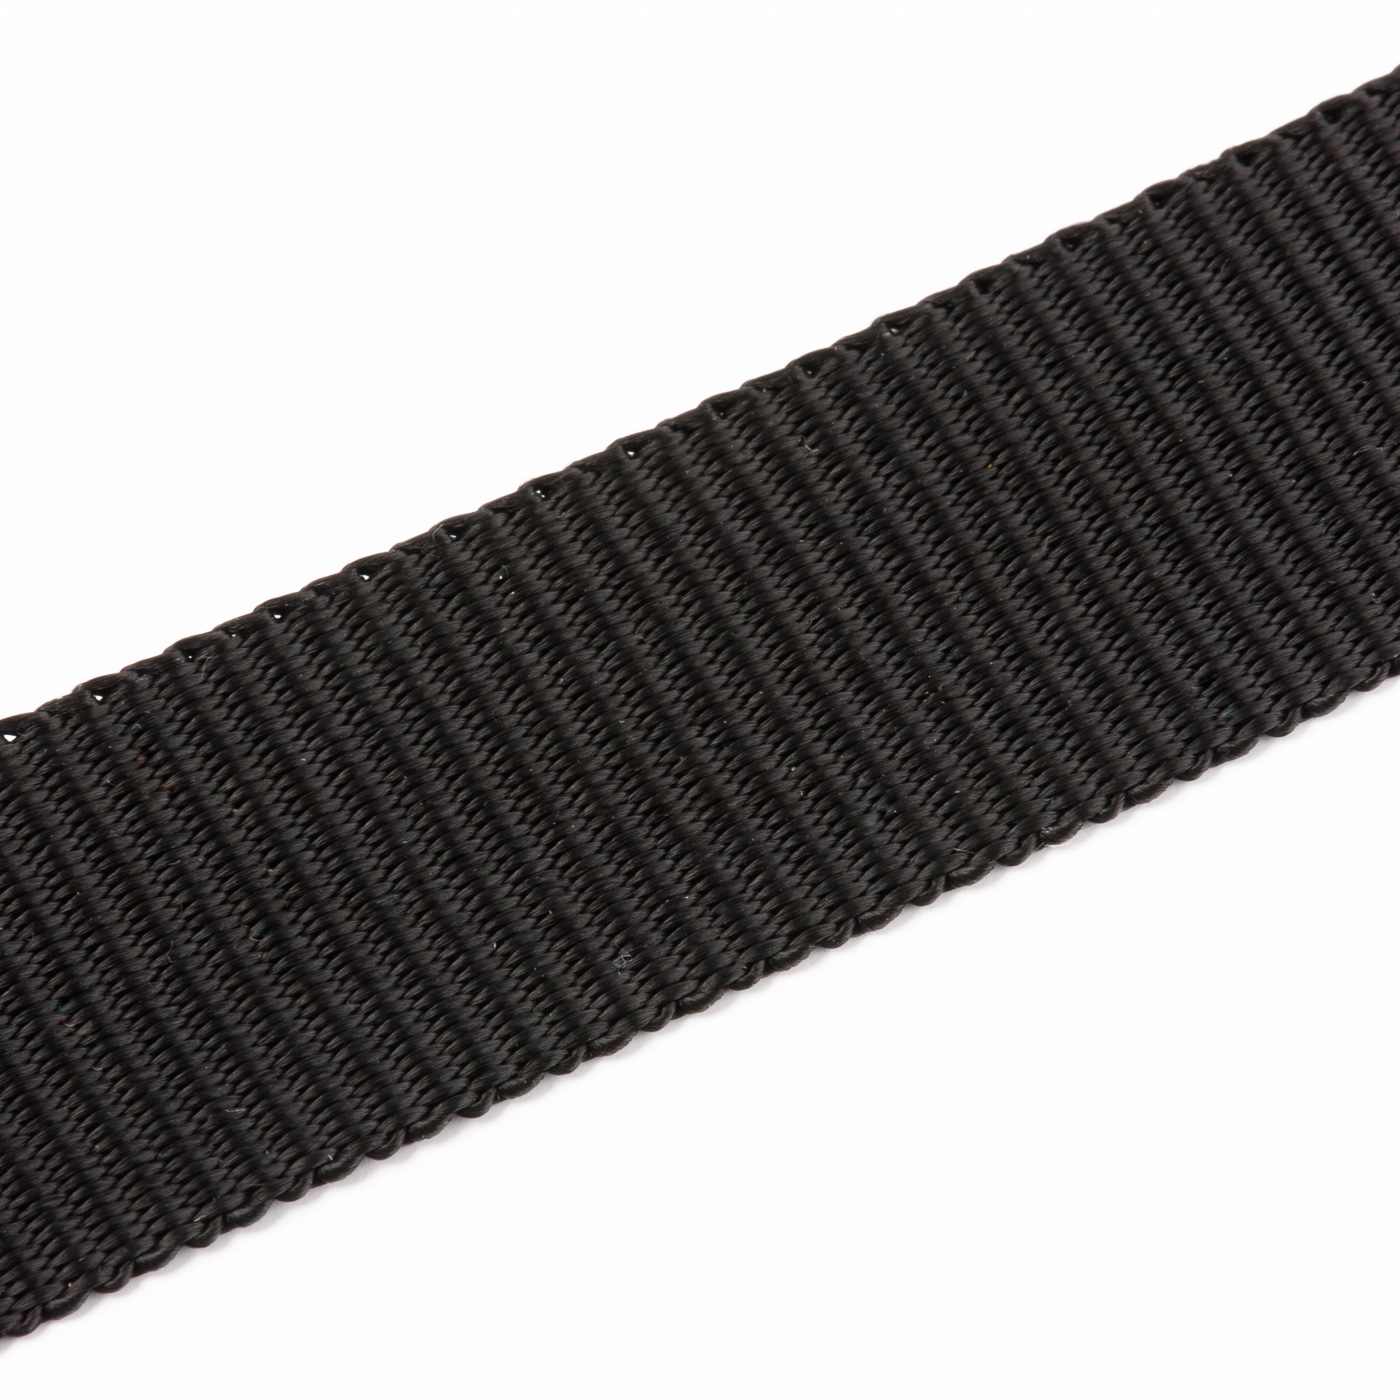 Gurtband Einfassband aus Polyester sehr belastbar 20-25mm ab 0,60€/m 